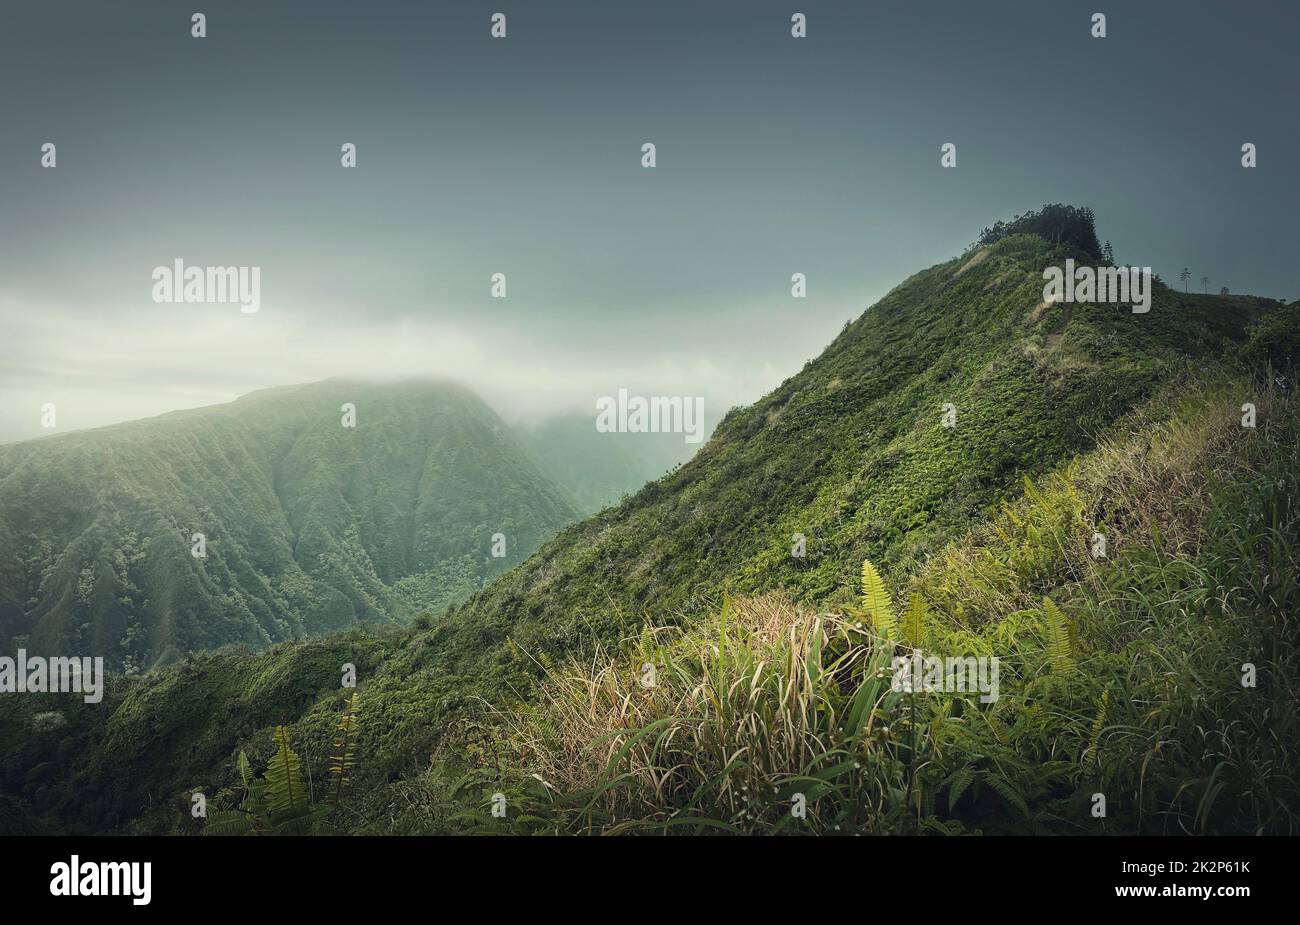 Splendida vista sulle verdi colline delle Hawaii, isola di Oahu. Escursioni montagna paesaggio con vibrante vegetazione tropicale. Tempo Moody con nubi nebbiose sulla valle Foto Stock